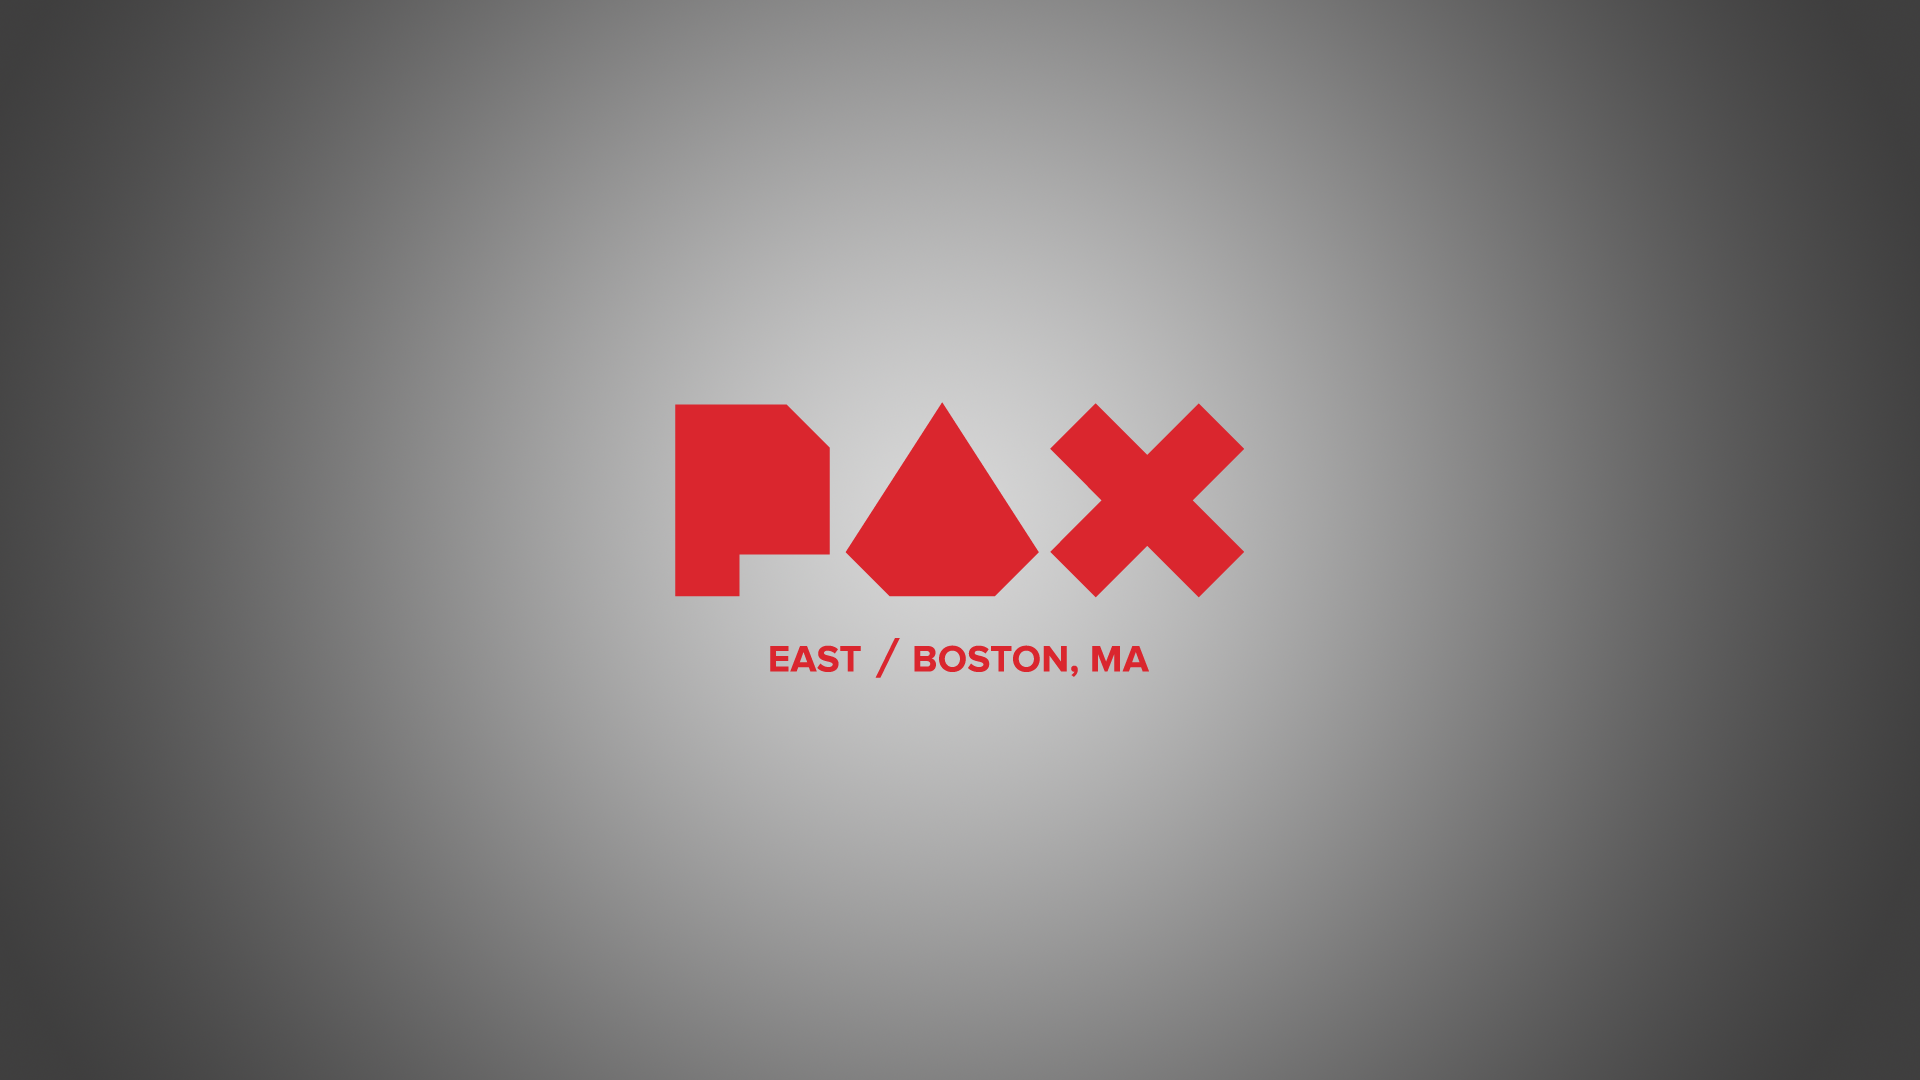 Pax Đông Boston